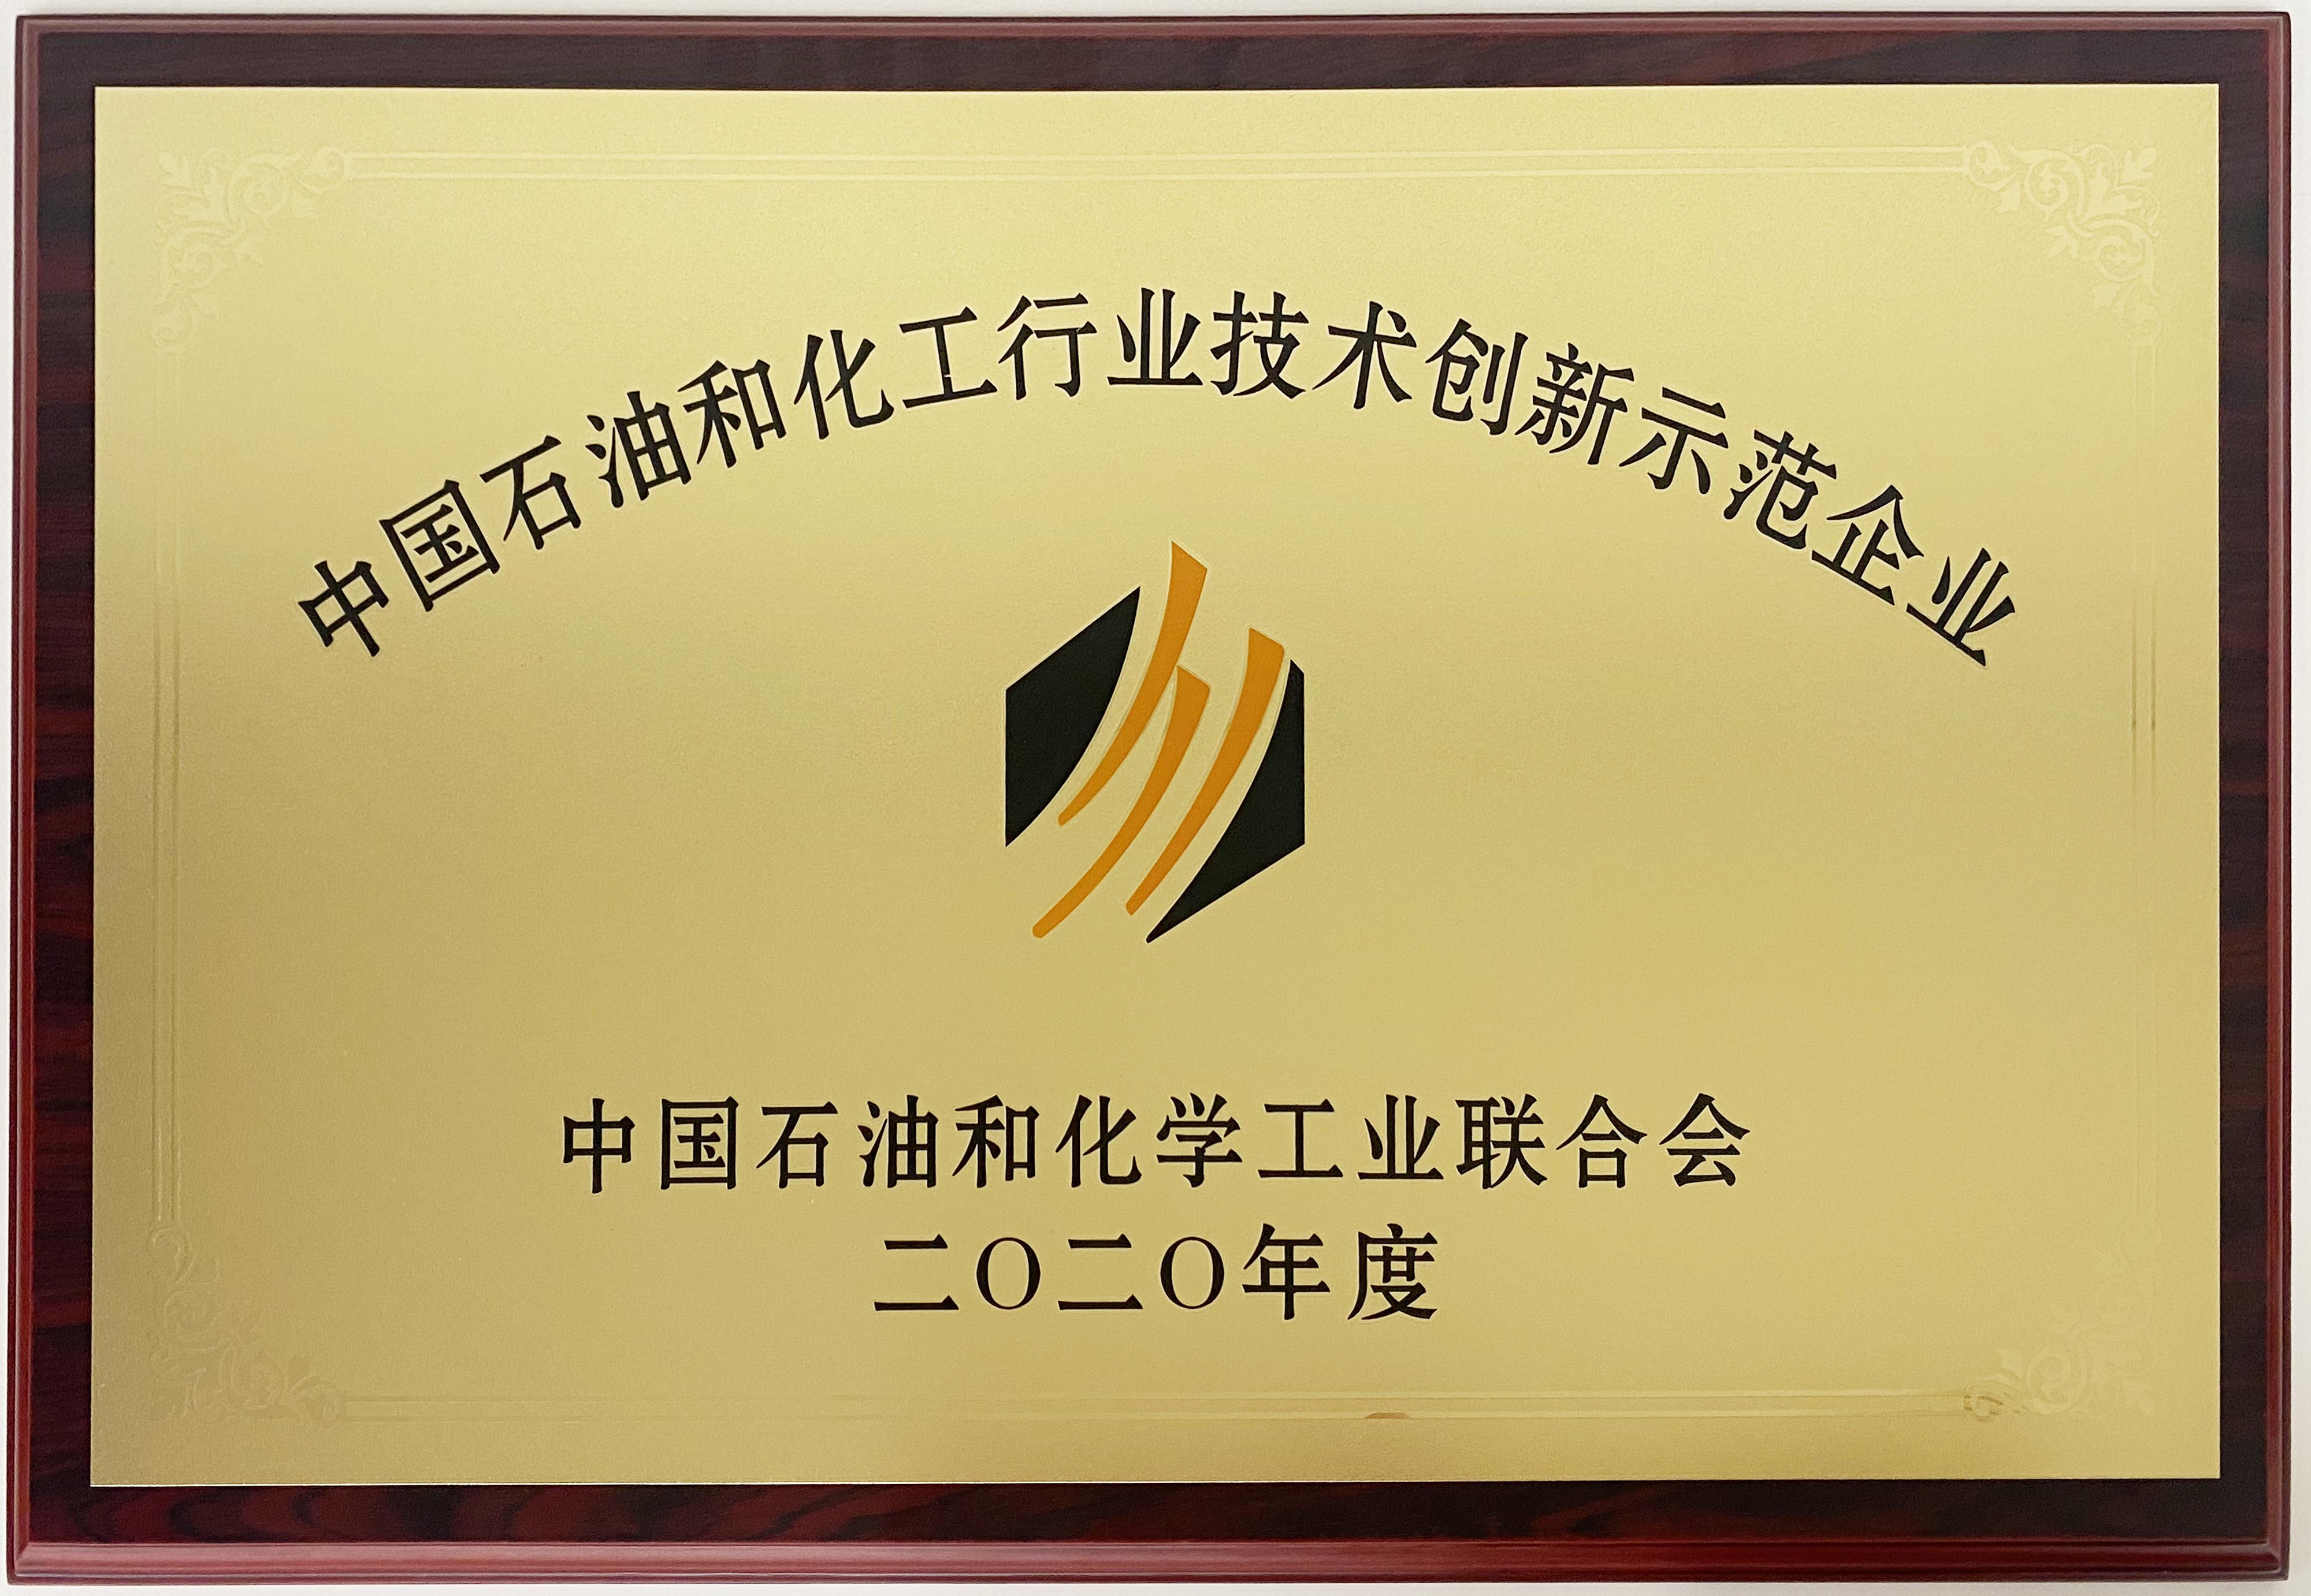 圣奥化学荣获2020年度“中国石油和化工行业技术创新示范企业”称号 